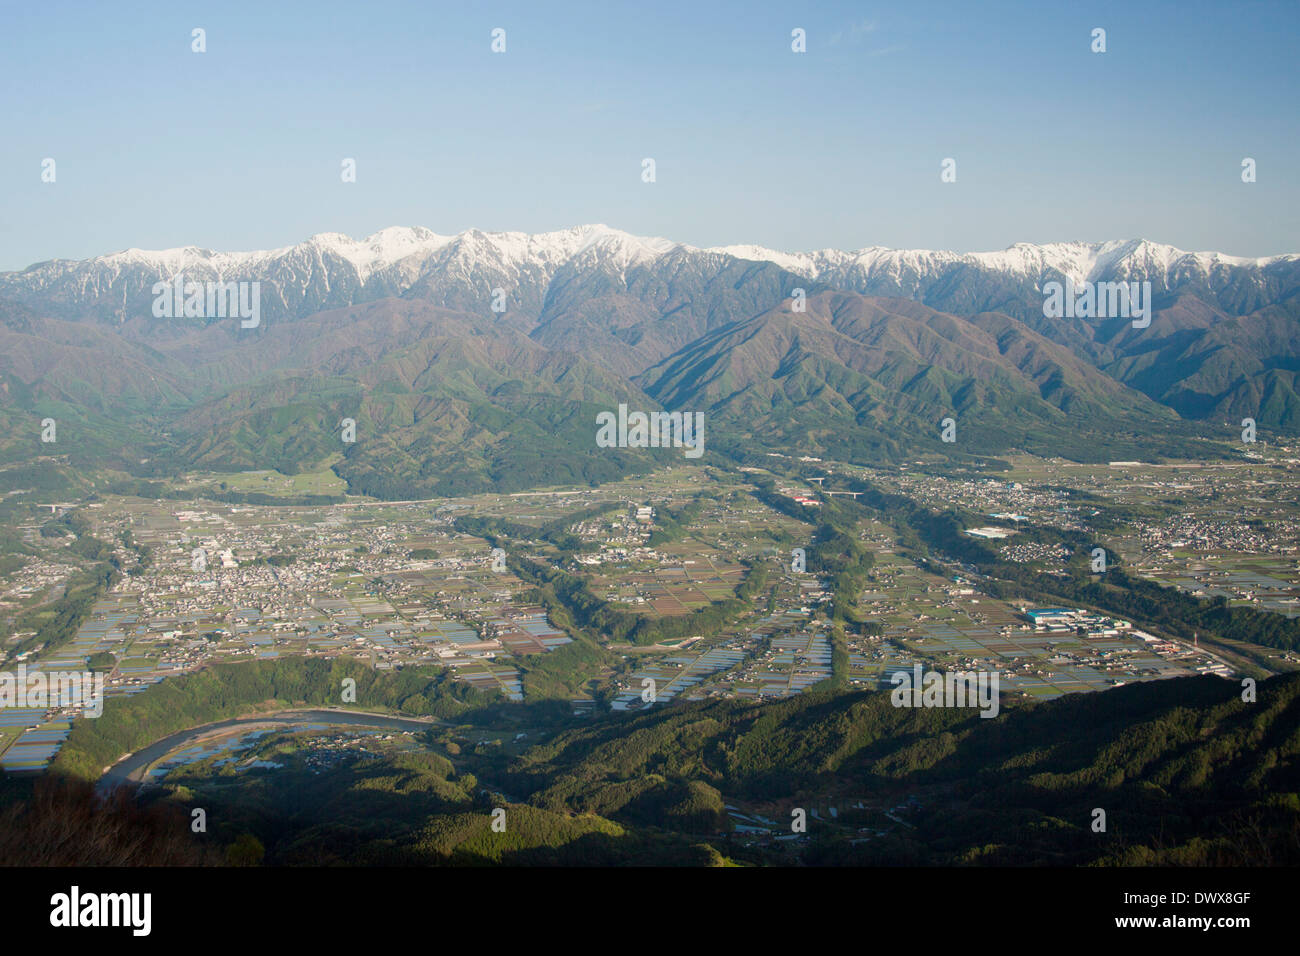 Mountain range in Nagano, Japan Stock Photo